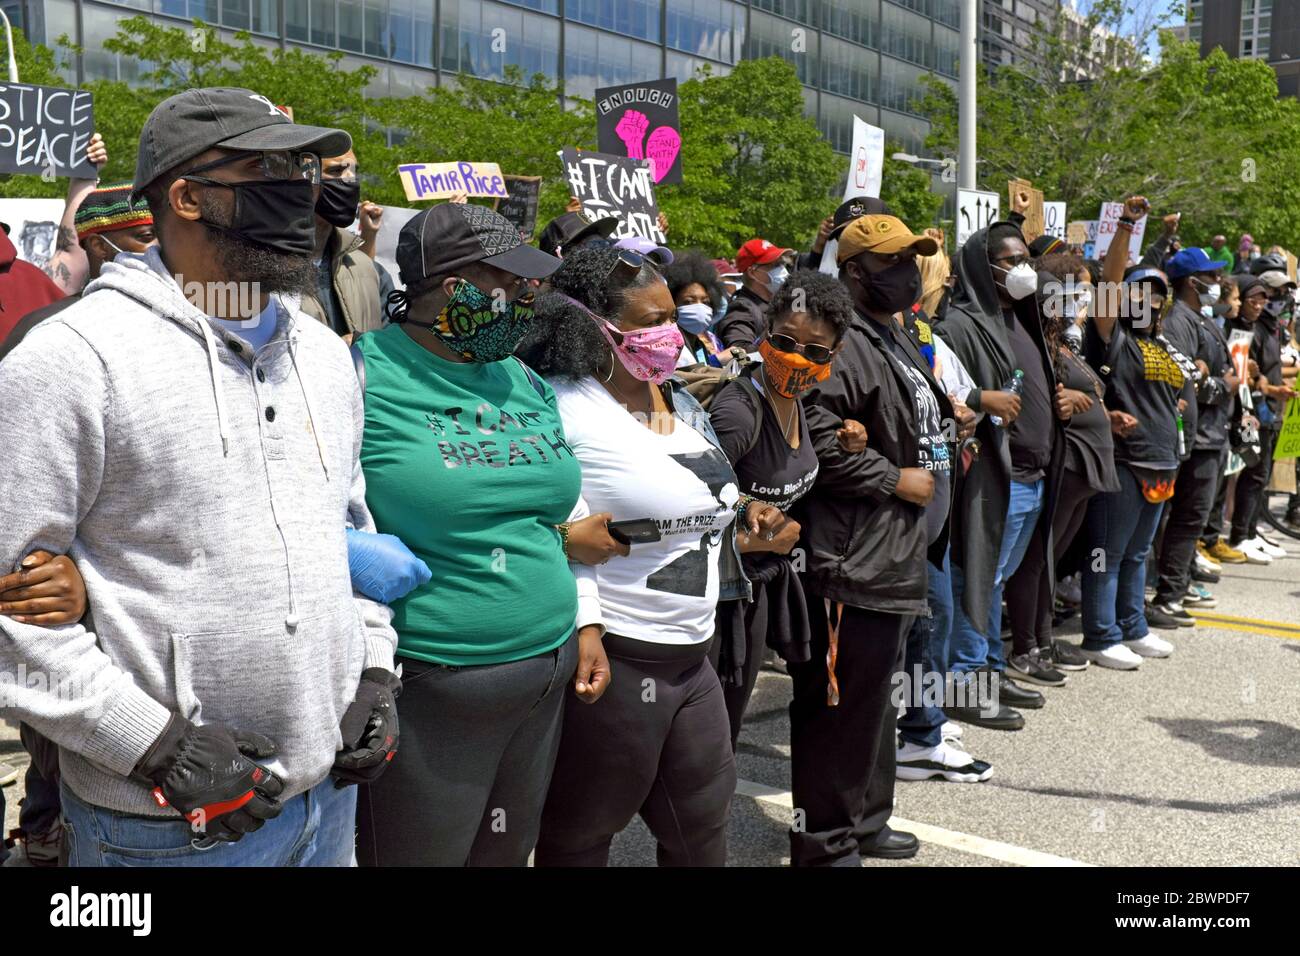 Les manifestants avec des armes et des panneaux ont fait la queue pour une marche de protestation dans le centre-ville de Cleveland, Ohio, États-Unis contre la brutalité policière des Noirs. Banque D'Images